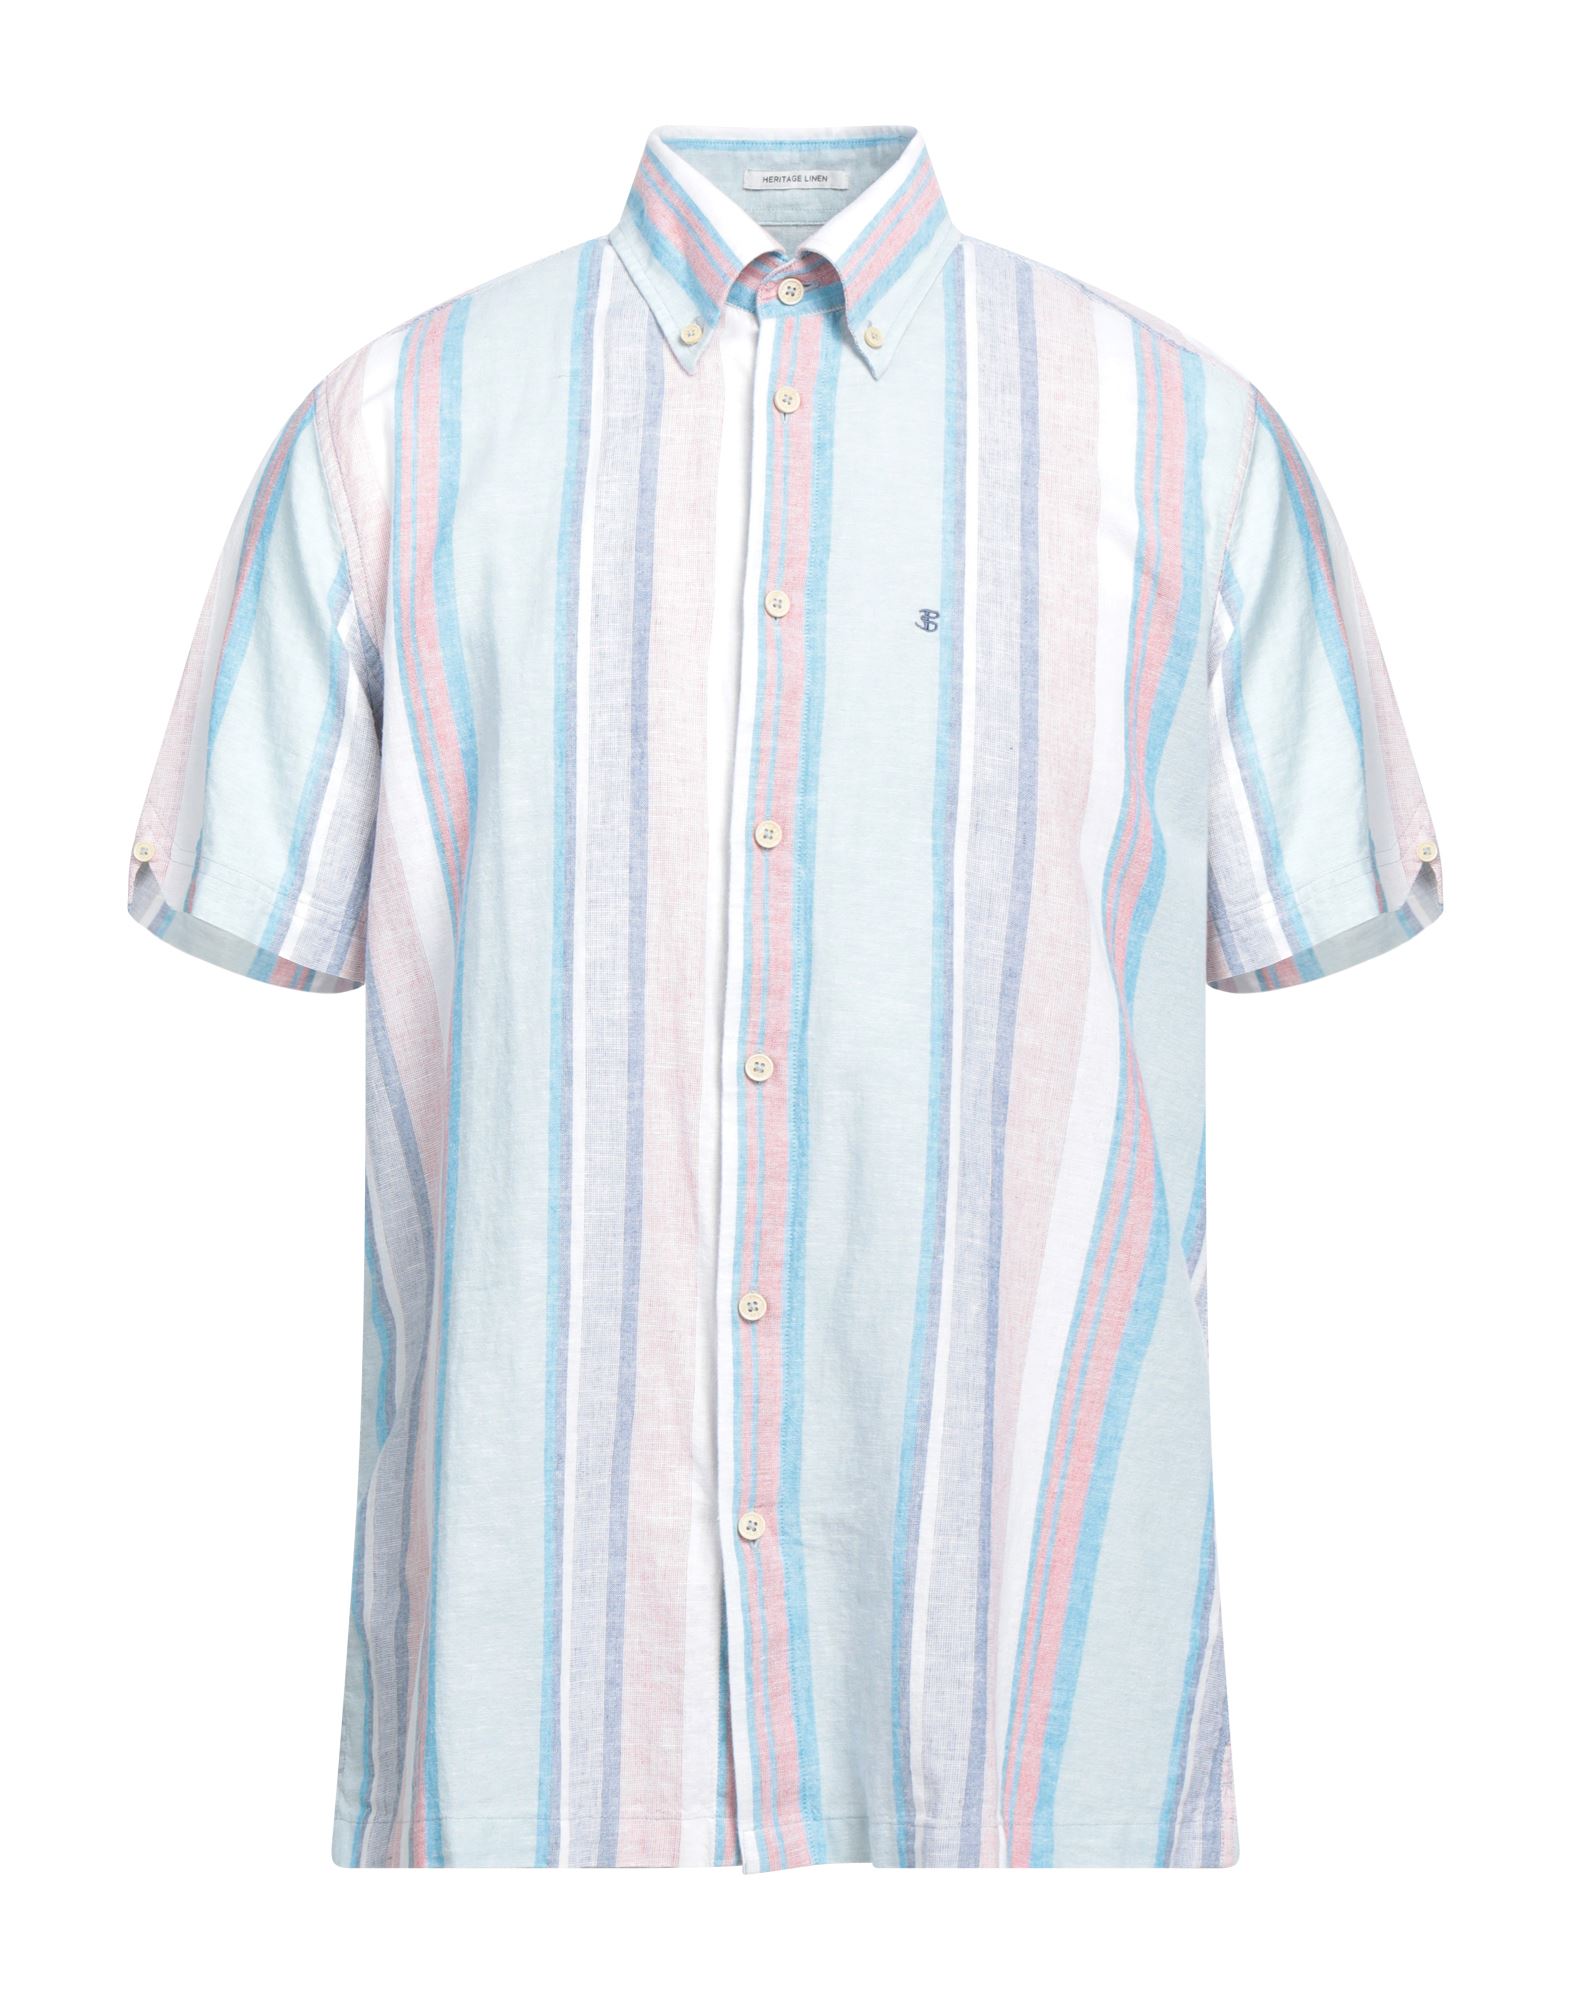 ベンシャーマン(Ben Sherman) メンズシャツ・ワイシャツ | 通販・人気